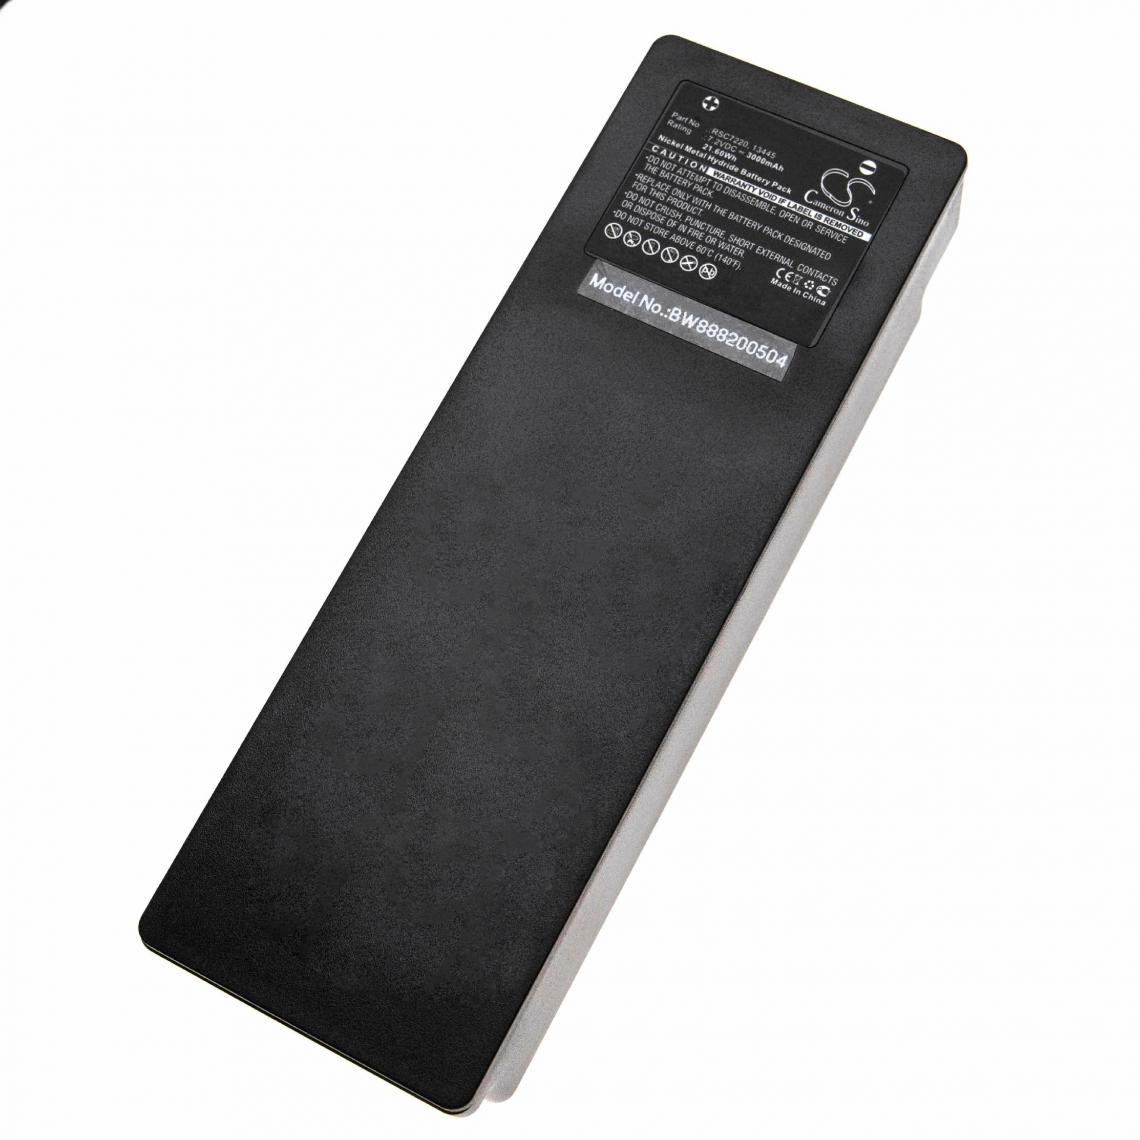 Vhbw - vhbw Batterie compatible avec Palfinger 590, 790, 960, EEA2512, RC-400, RC400 Télécommande Industrielle (3000mAh, 7.2V, NiMH) - Autre appareil de mesure